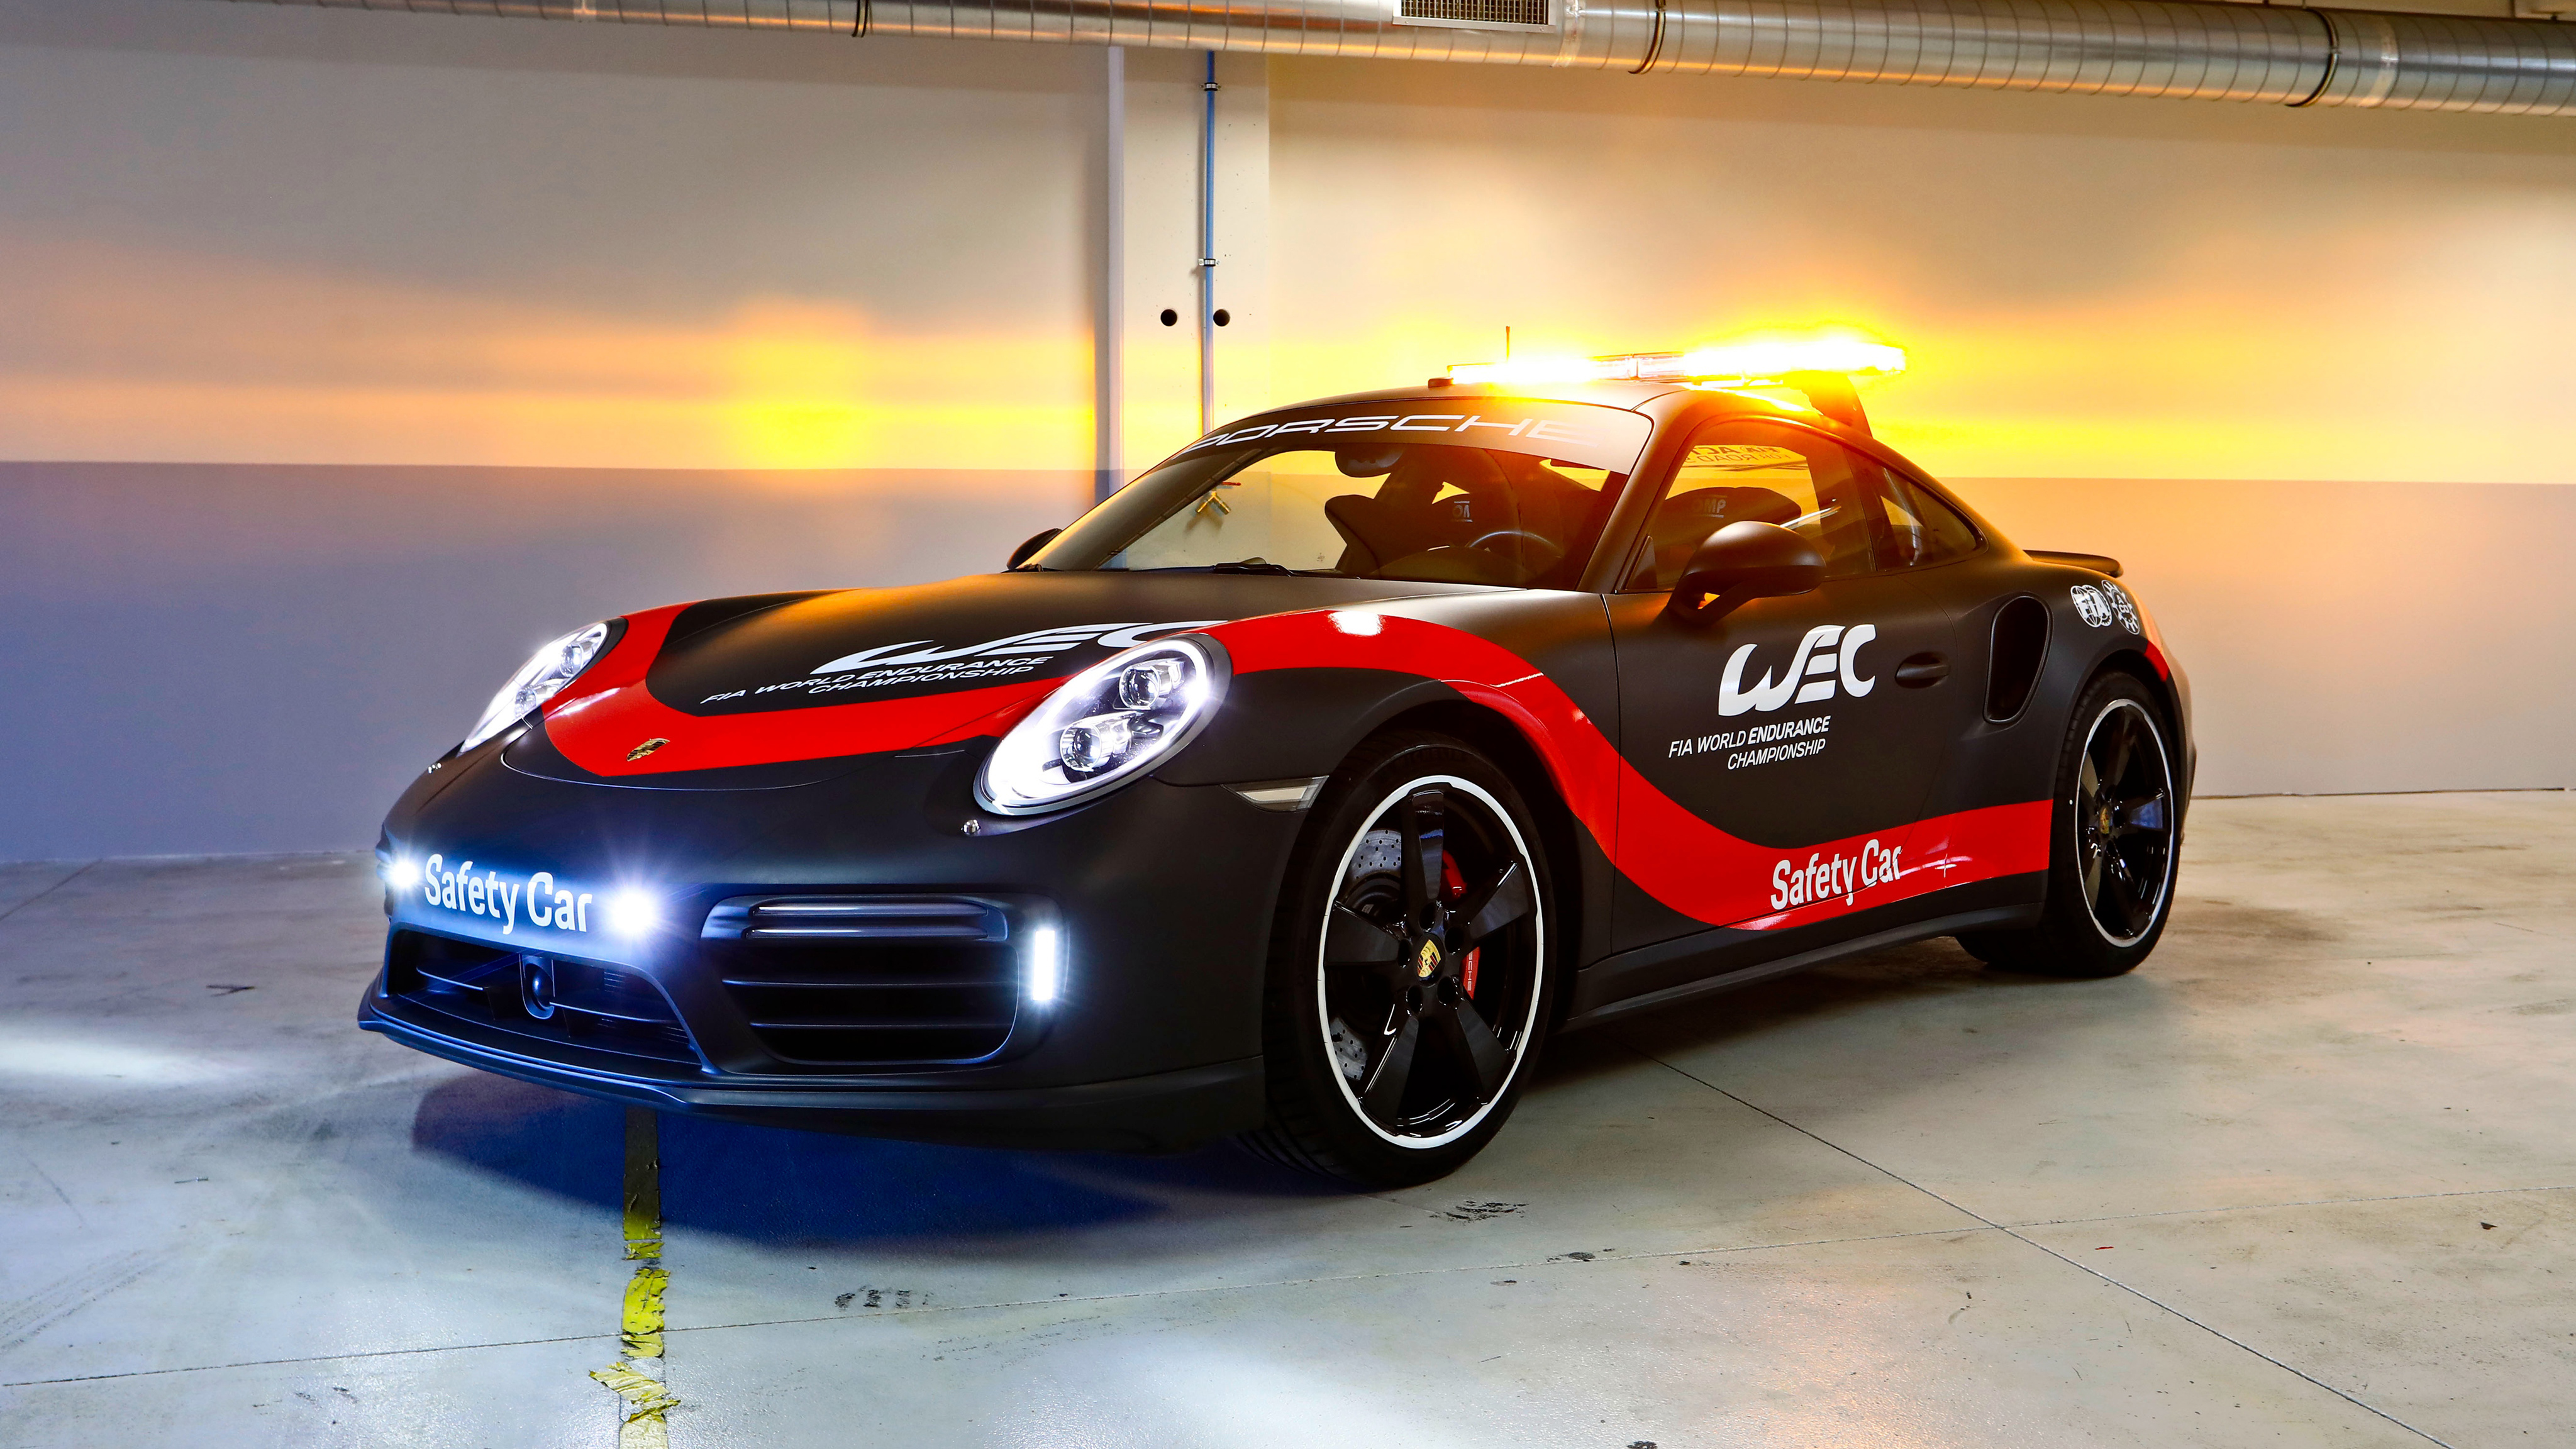 Porsche Turbo WEC Safety Car K